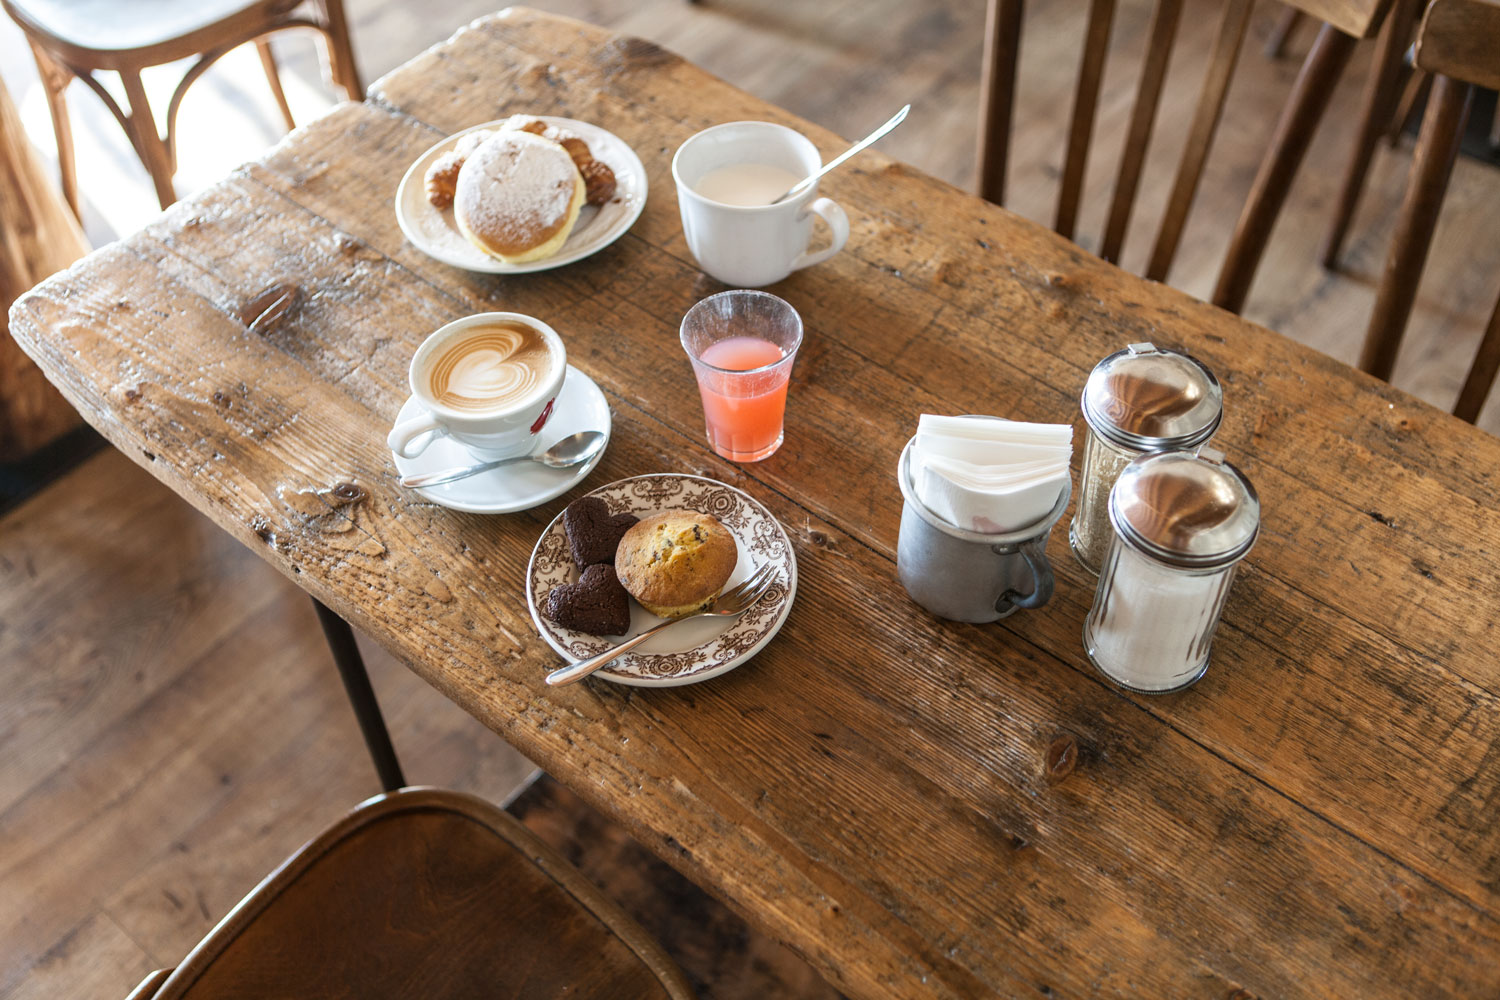 Tavolino in legno con cappuccini, spremuta, muffin e brioches